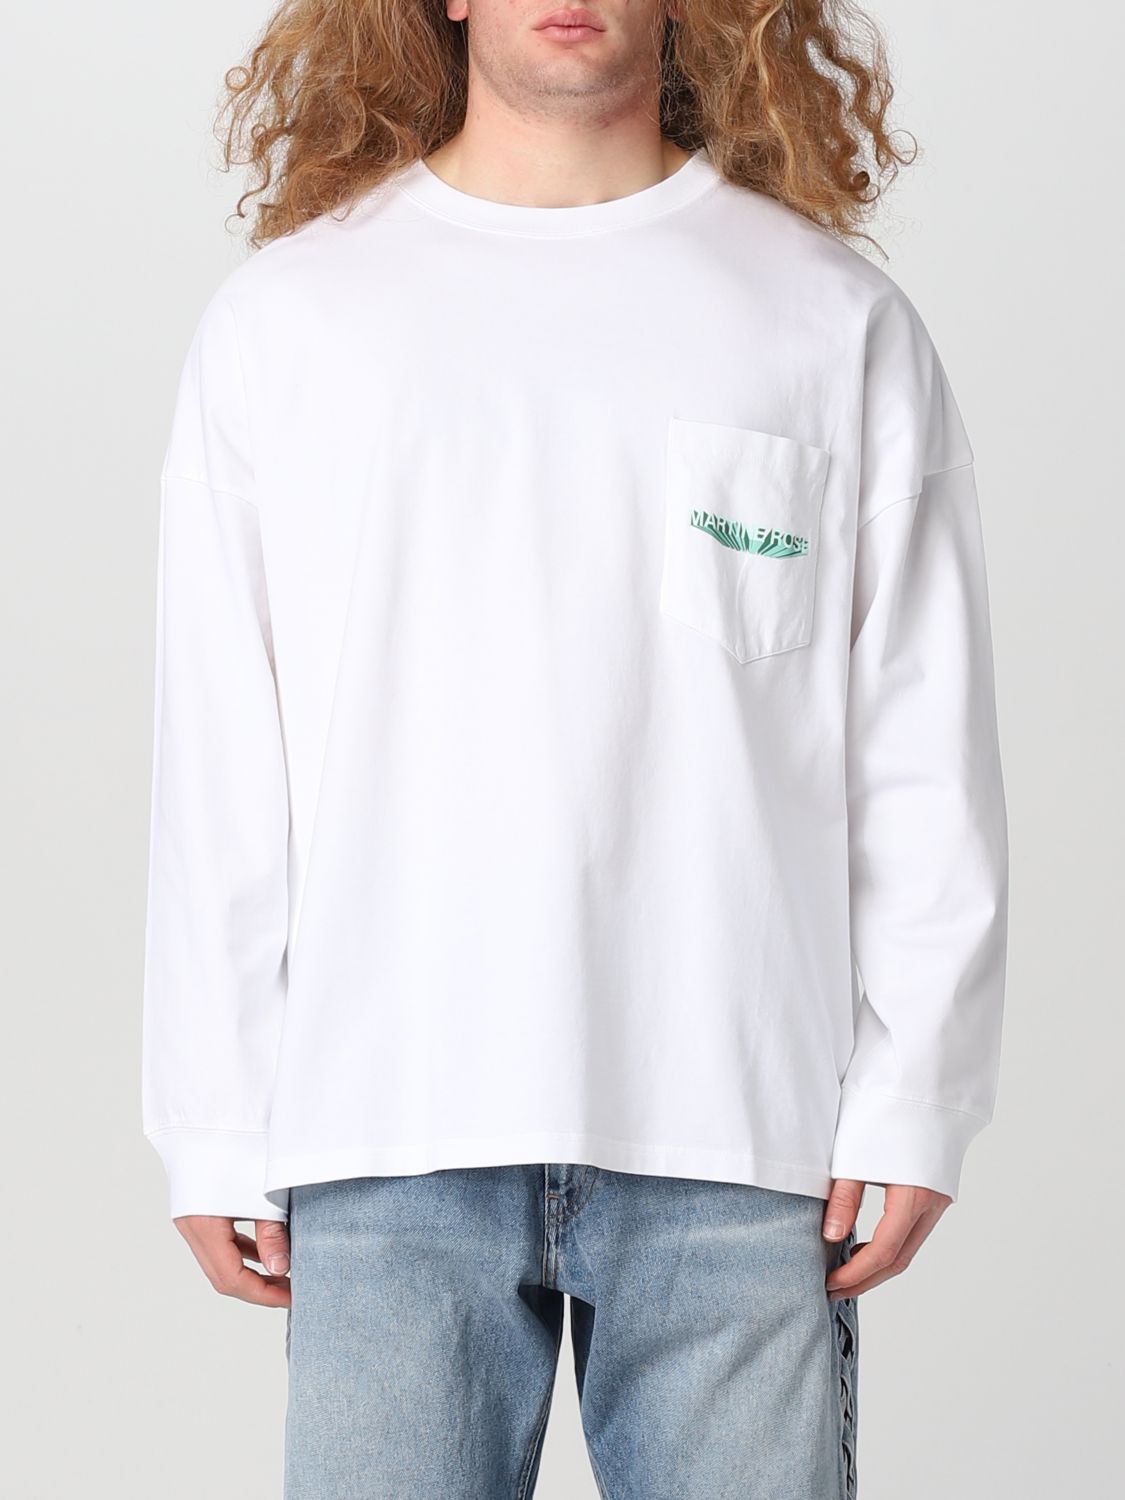 Martine Rose Men Logo Oversized L/s T-shirt In White | ModeSens